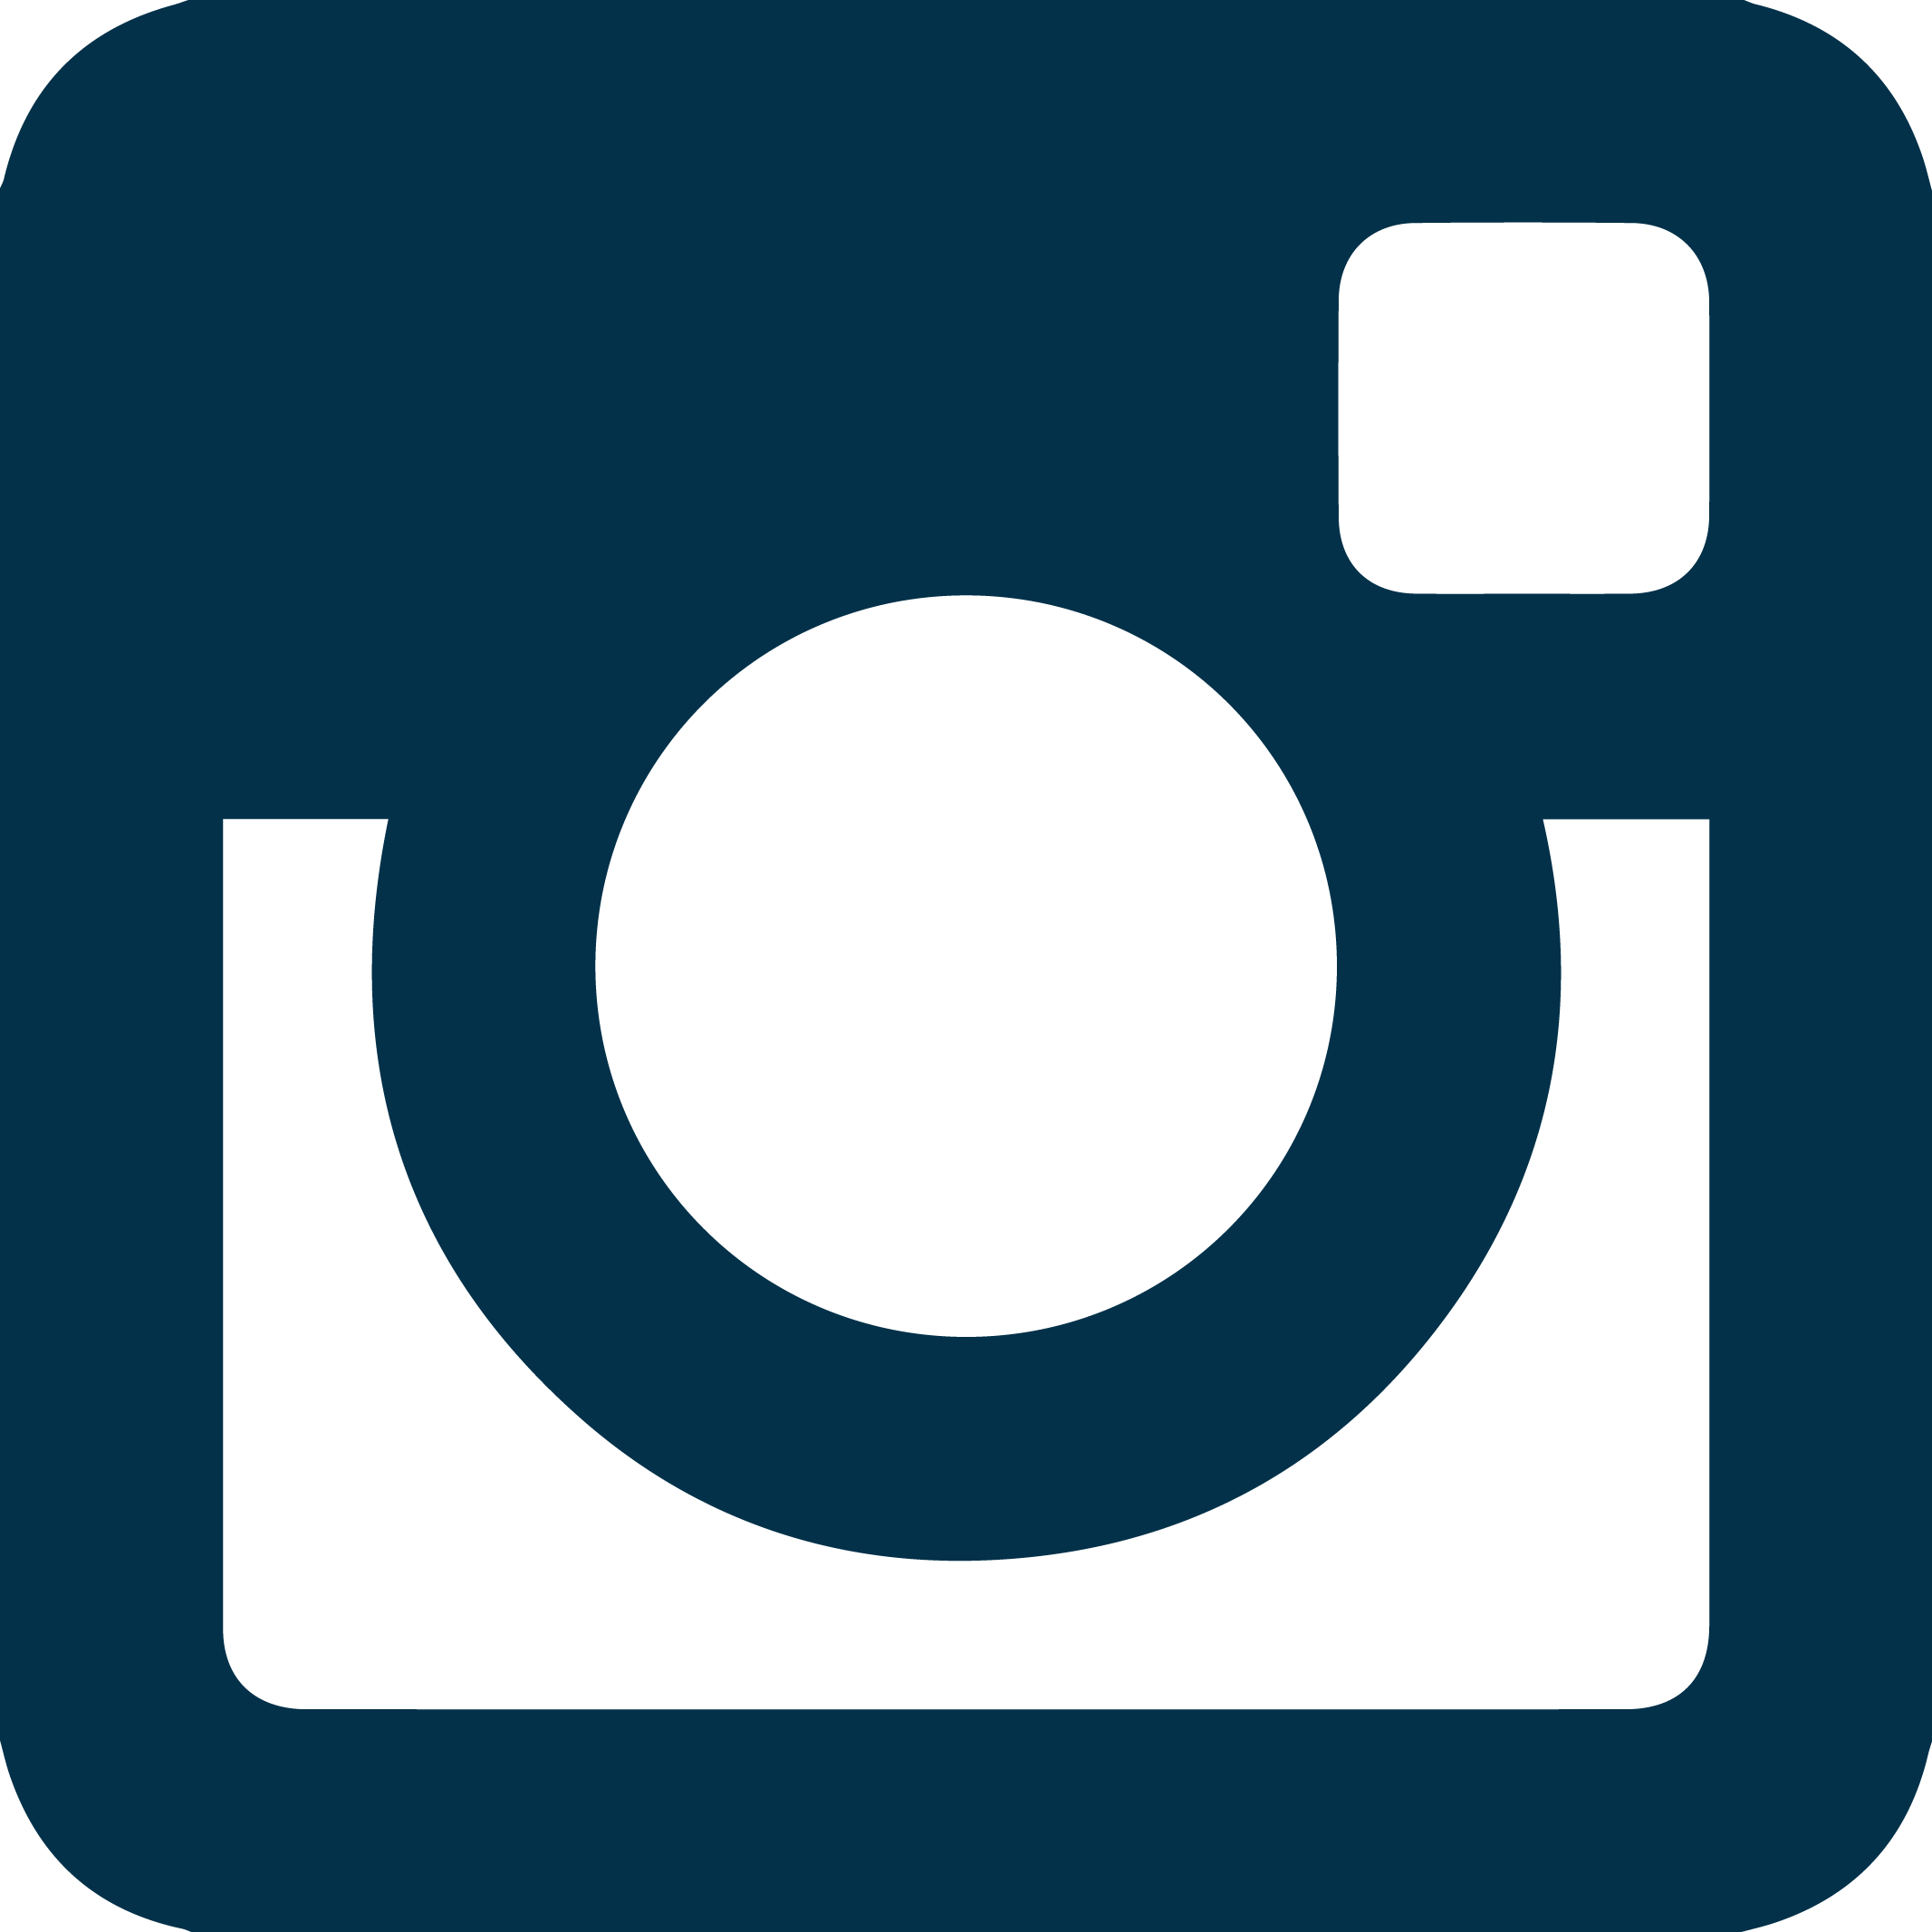 Lpl On Facebook Icon Lpl On Instagram Icon - Transparent Instagram Logo Blue (2133x2133)